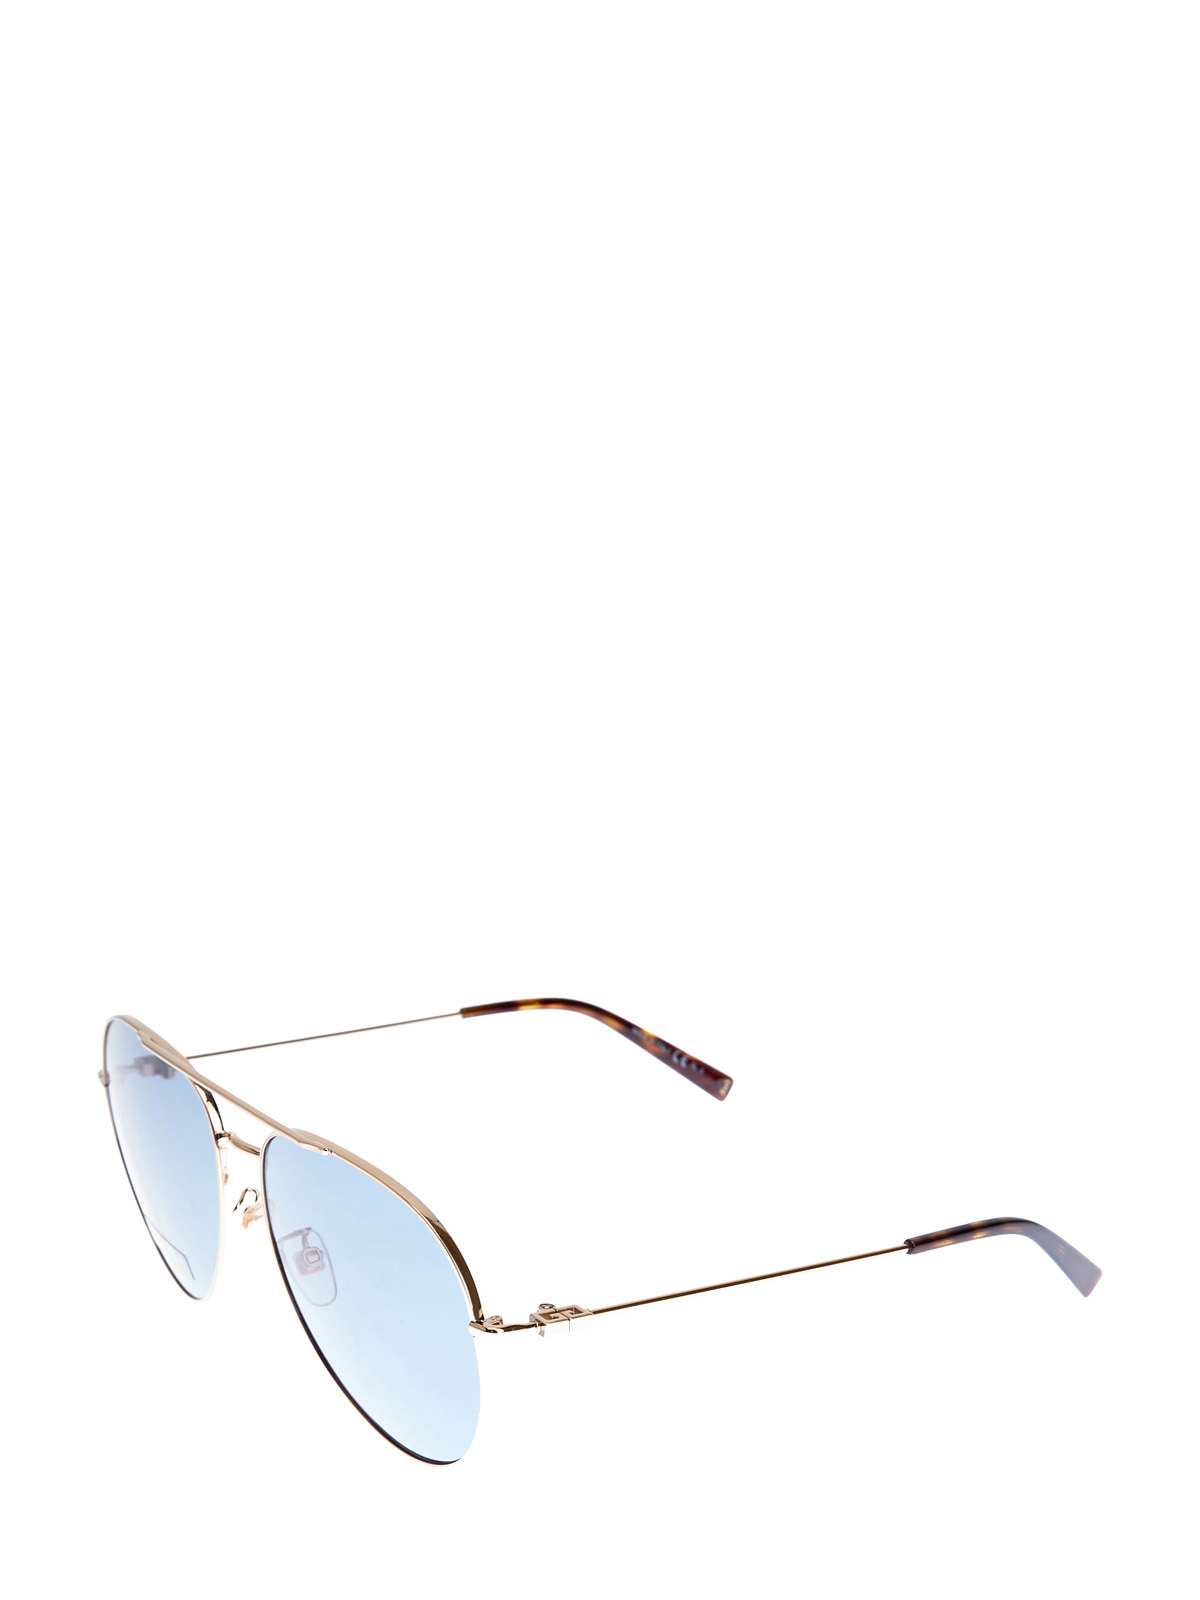 Классические очки-авиаторы с двойным мостом GIVENCHY (sunglasses), цвет голубой, размер S;M;L - фото 2